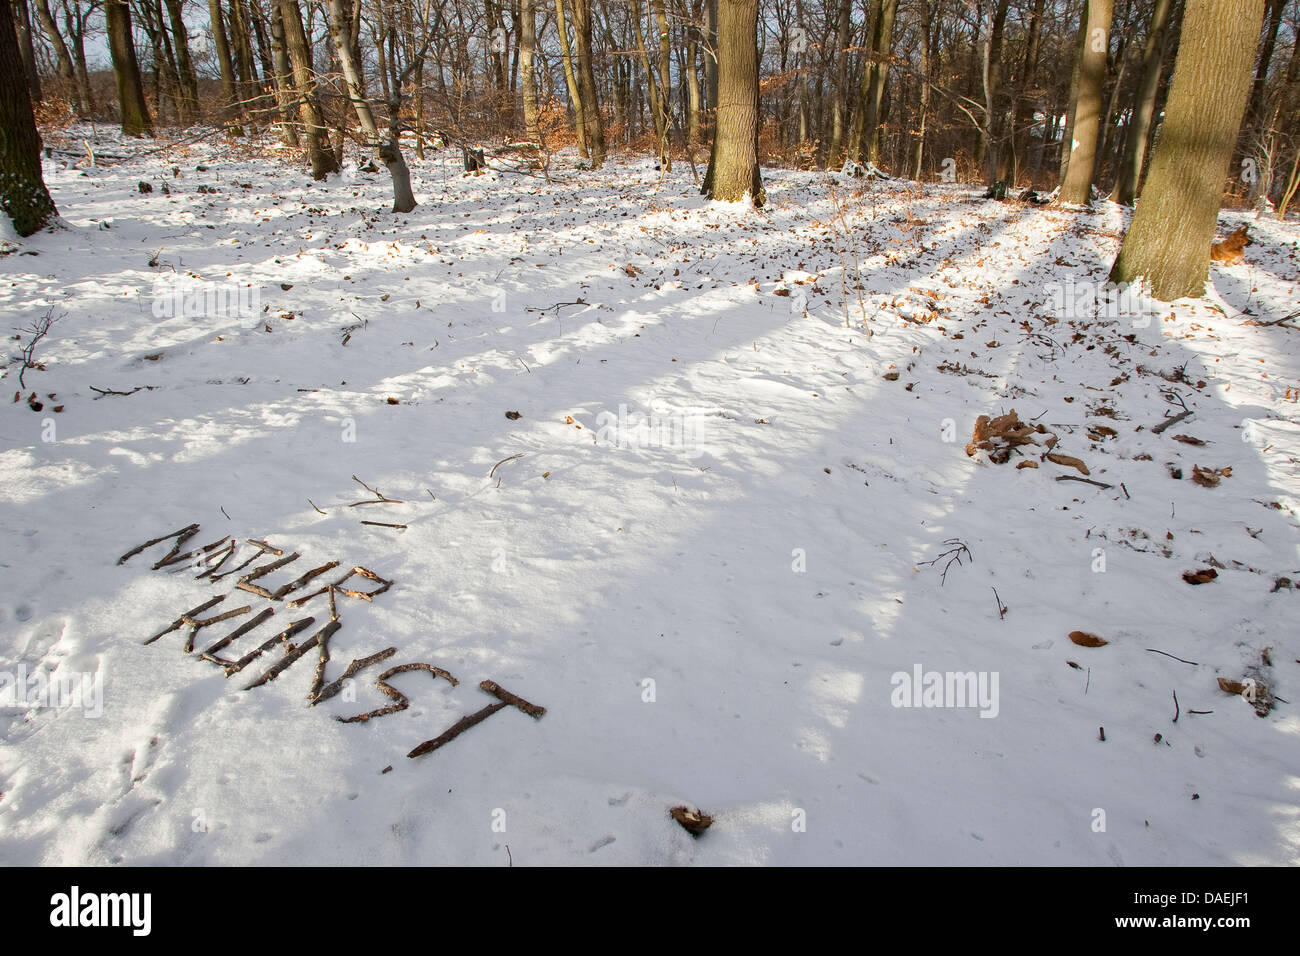 Schreiben Sie "Naturkunst - Natur-Kunst" im Schnee, Deutschland Stockfoto